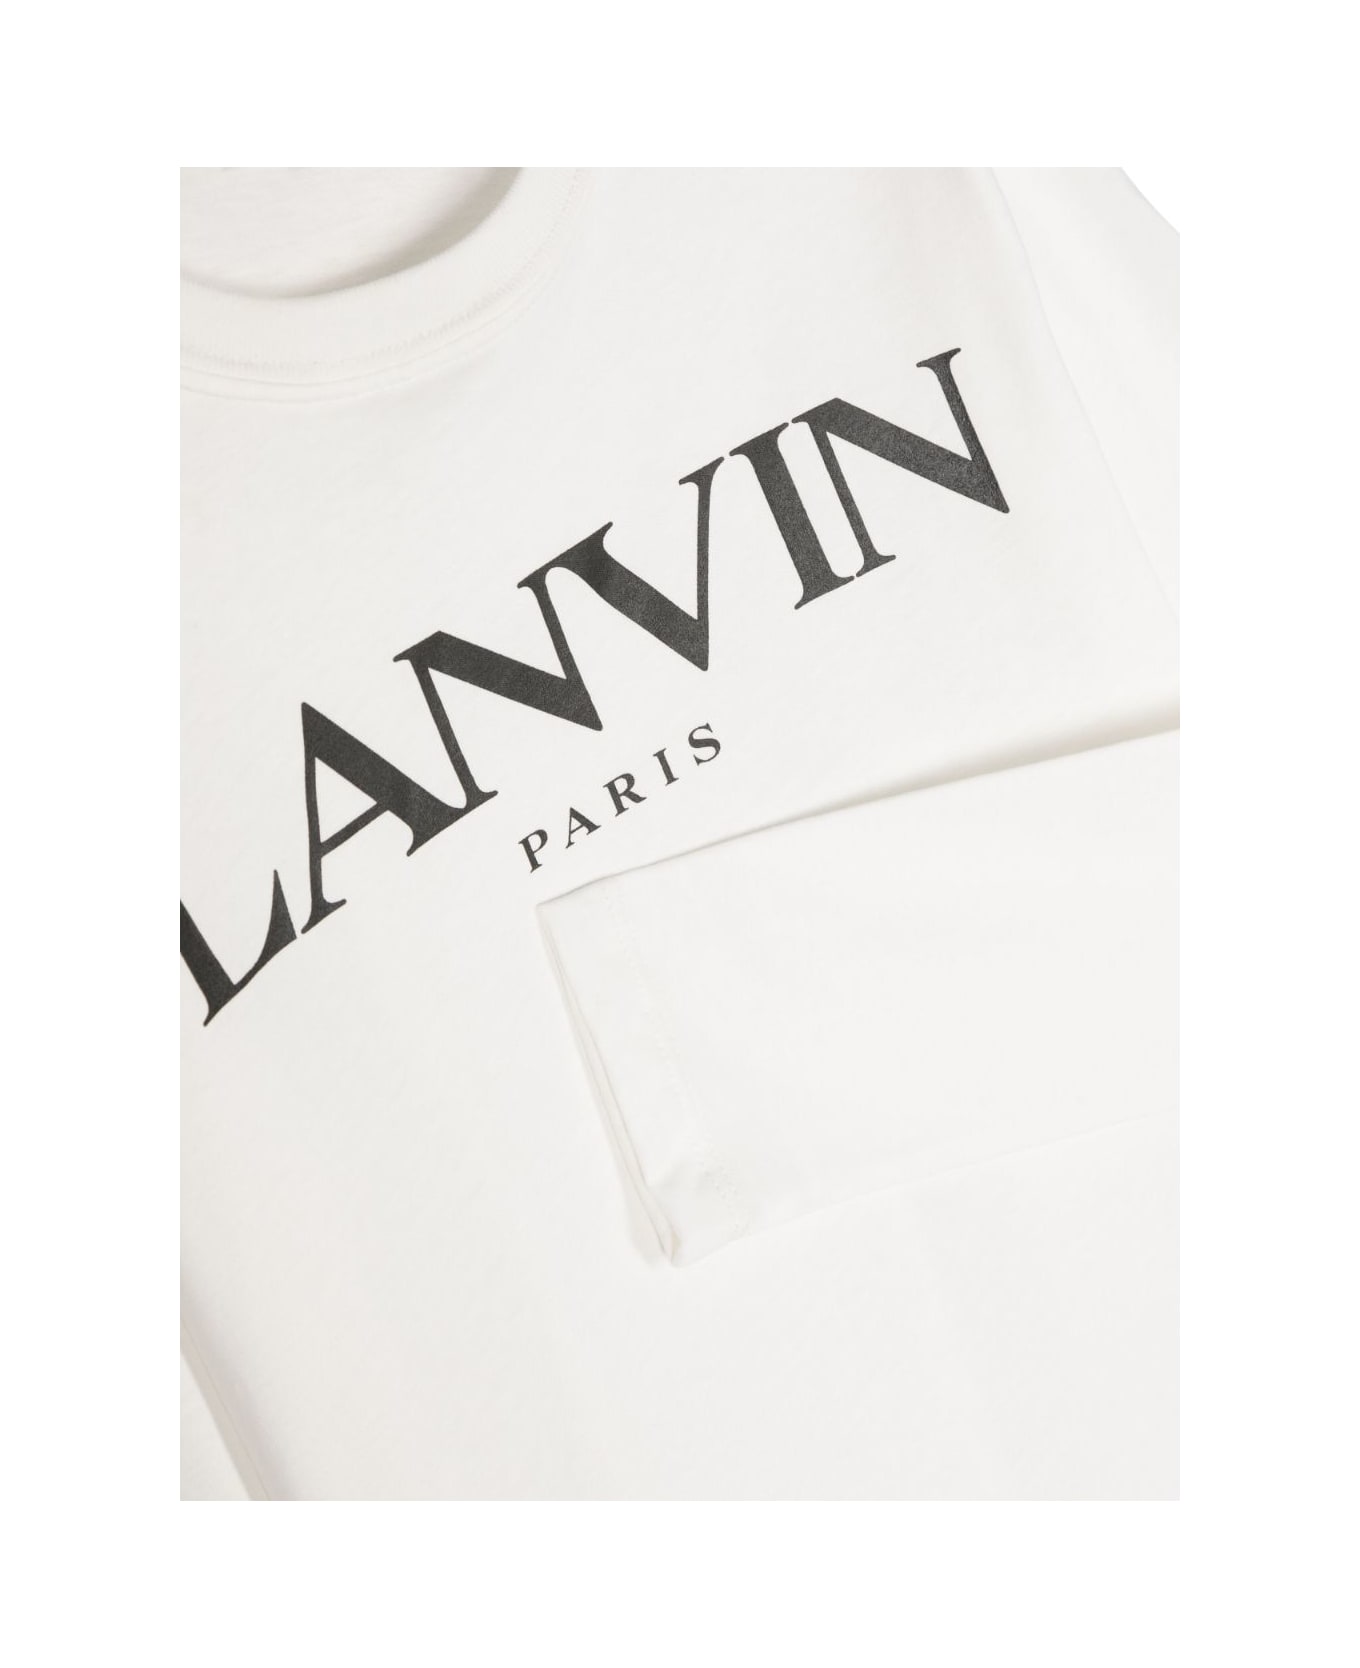 Lanvin T-shirt Nera In Jersey Di Cotone Bambino - Nero